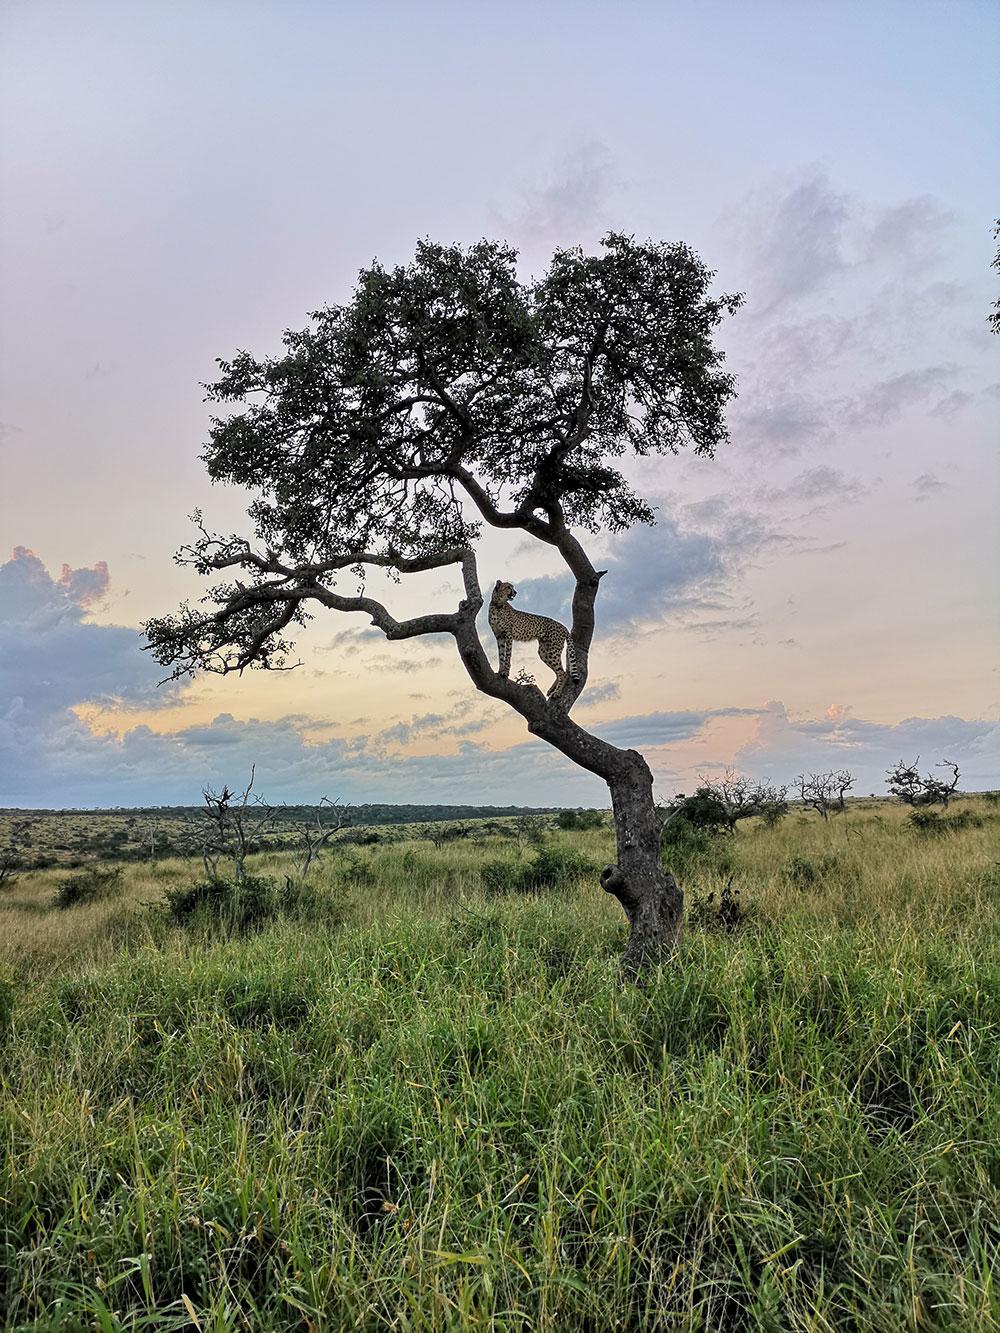 JFK testte de camera van de Huawei P20 Pro in Zuid-Afrika. Want als je op safari goede foto's kunt maken, dan kun je áltijd goede foto's maken.